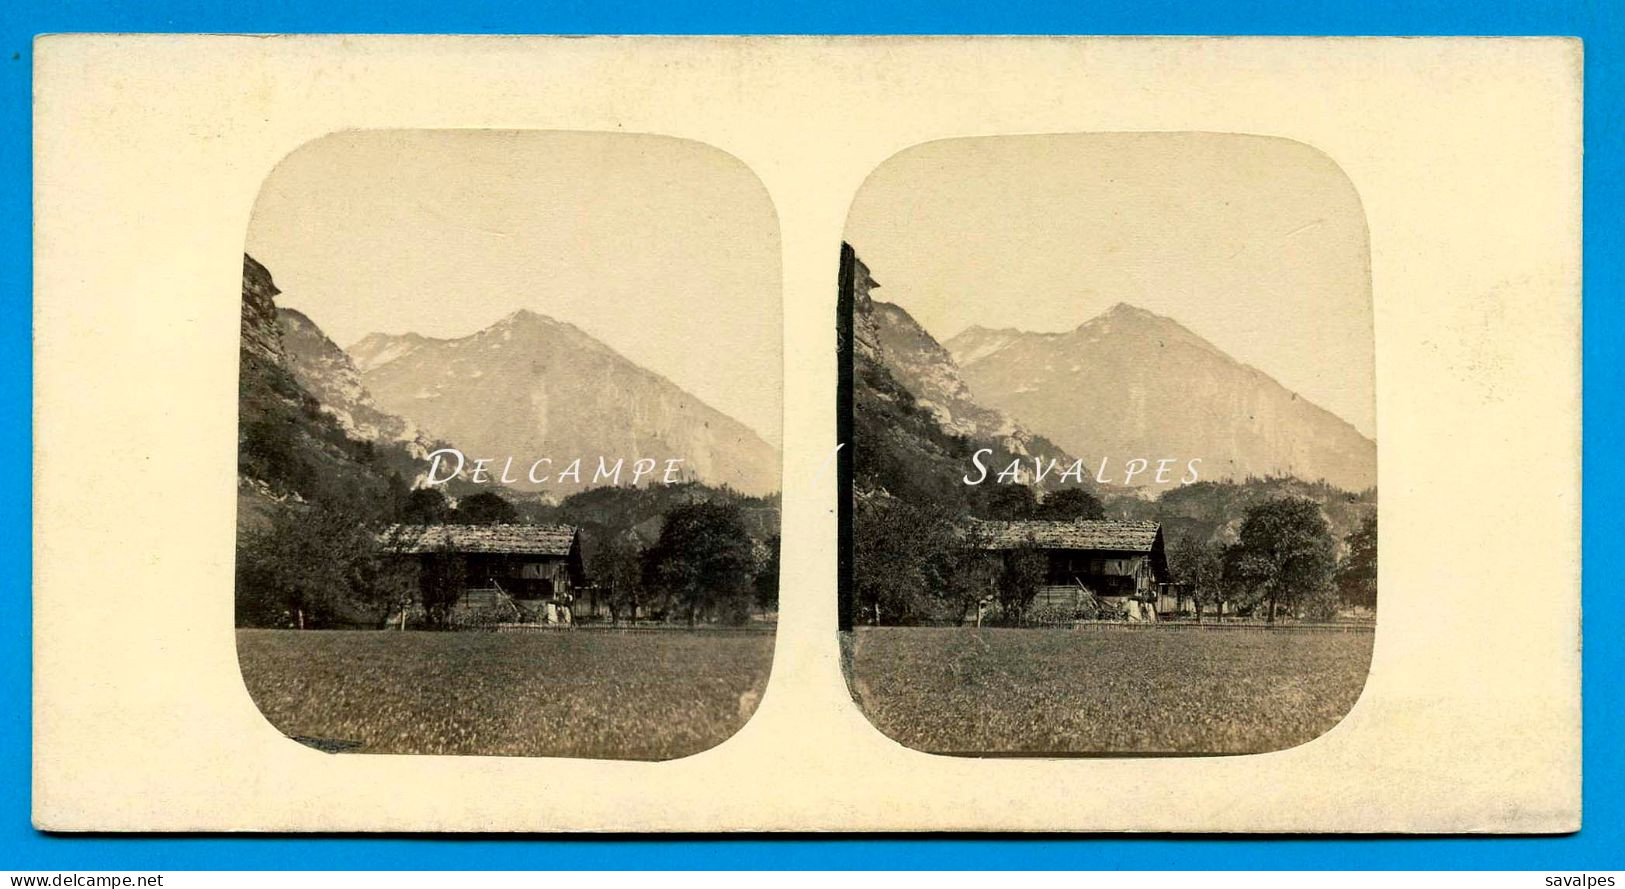 Suisse * Chalet à Meyringen * Photo Stéréoscopique Ferrier 1855 - Stereoscopic